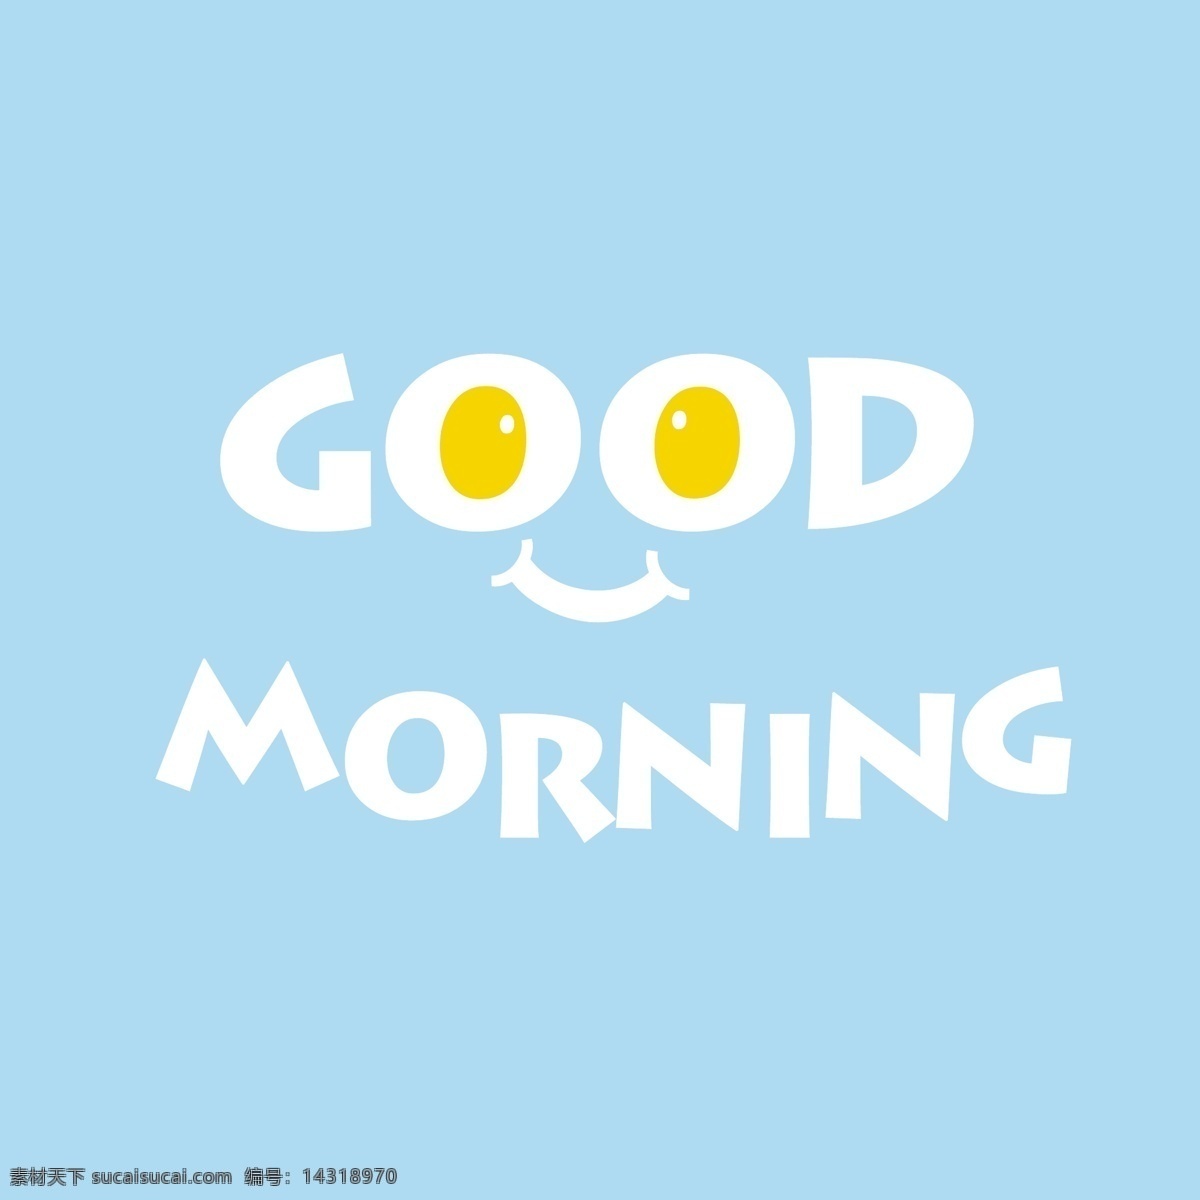 创意 早上 好 艺术 字 矢量 早晨 早上好 煎鸡蛋 艺术字 早安 矢量图 字体设计 蓝色背景图